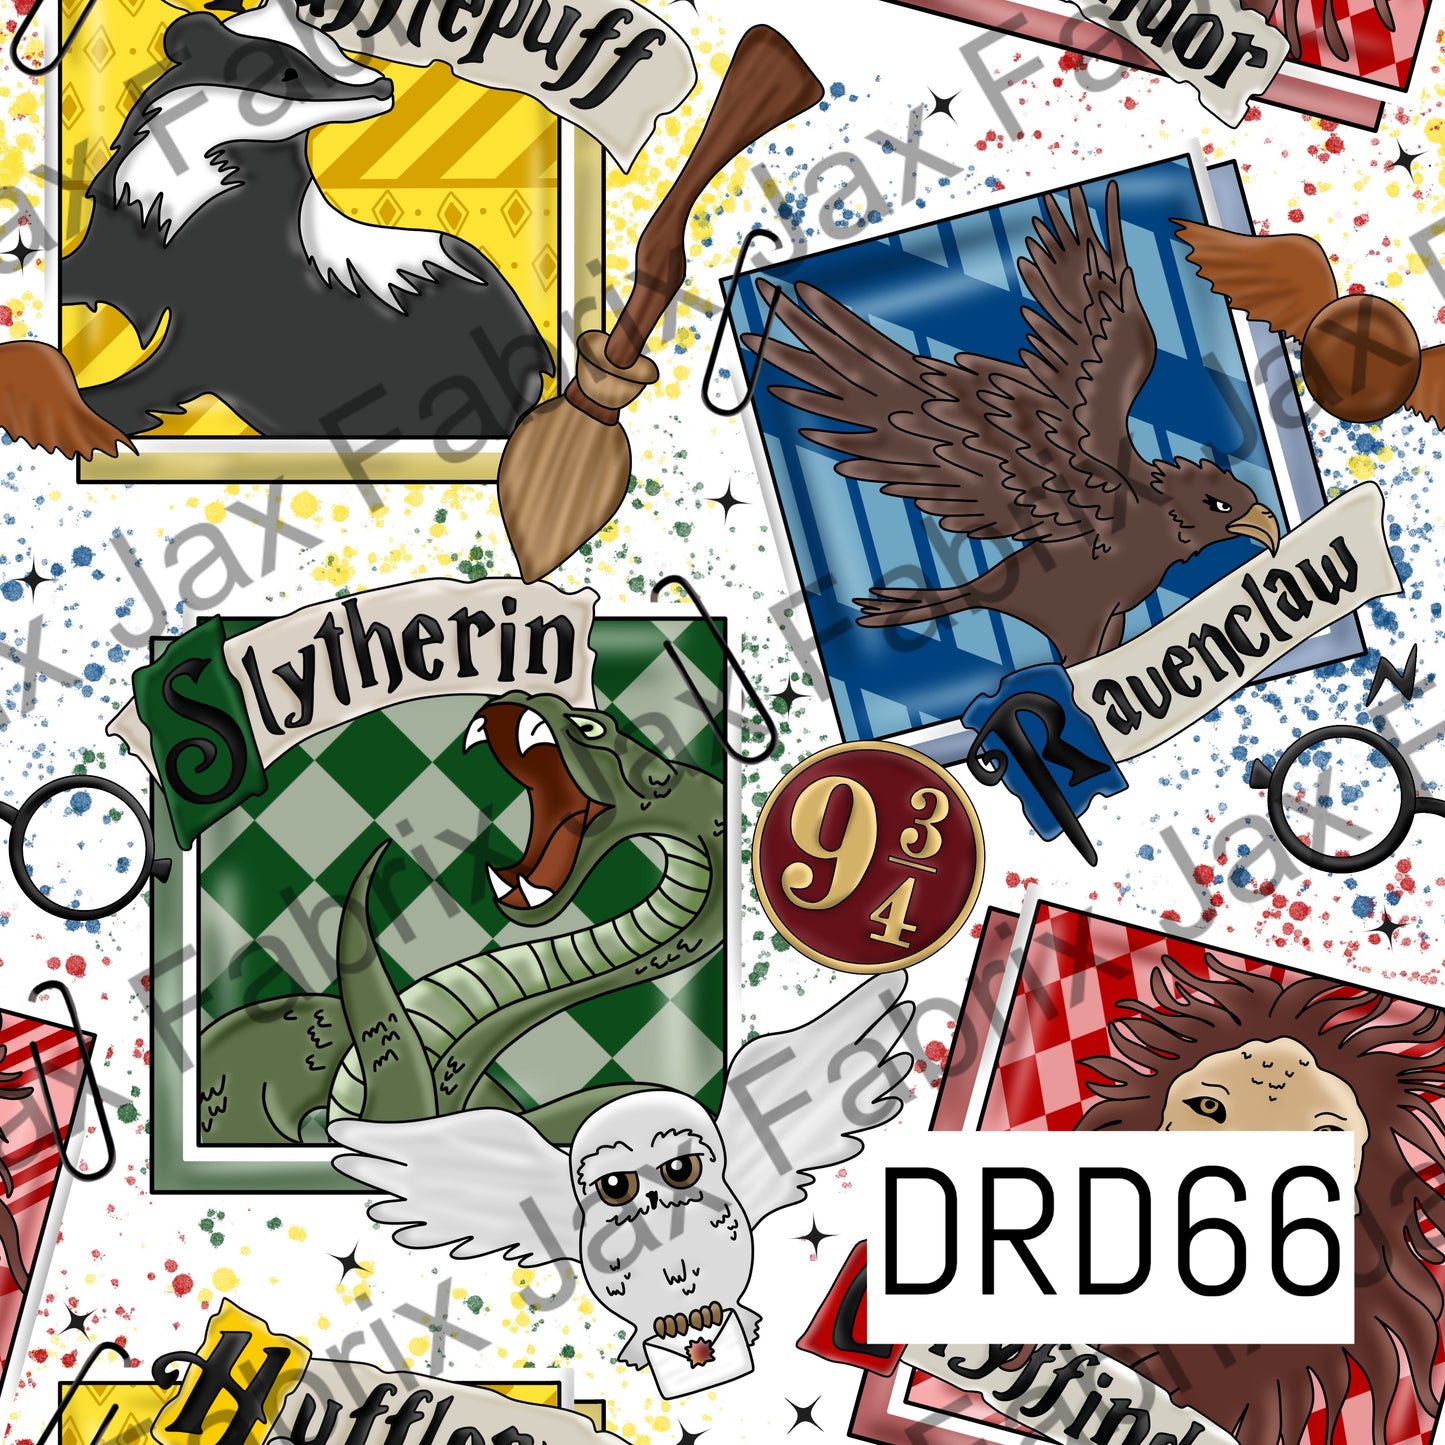 Mascots DRD66